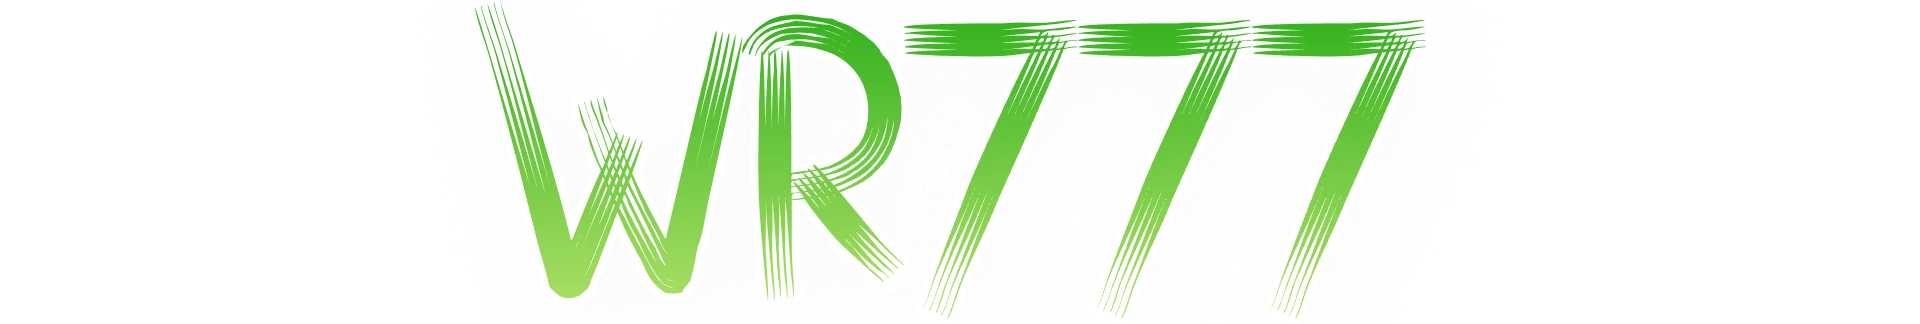 WR777